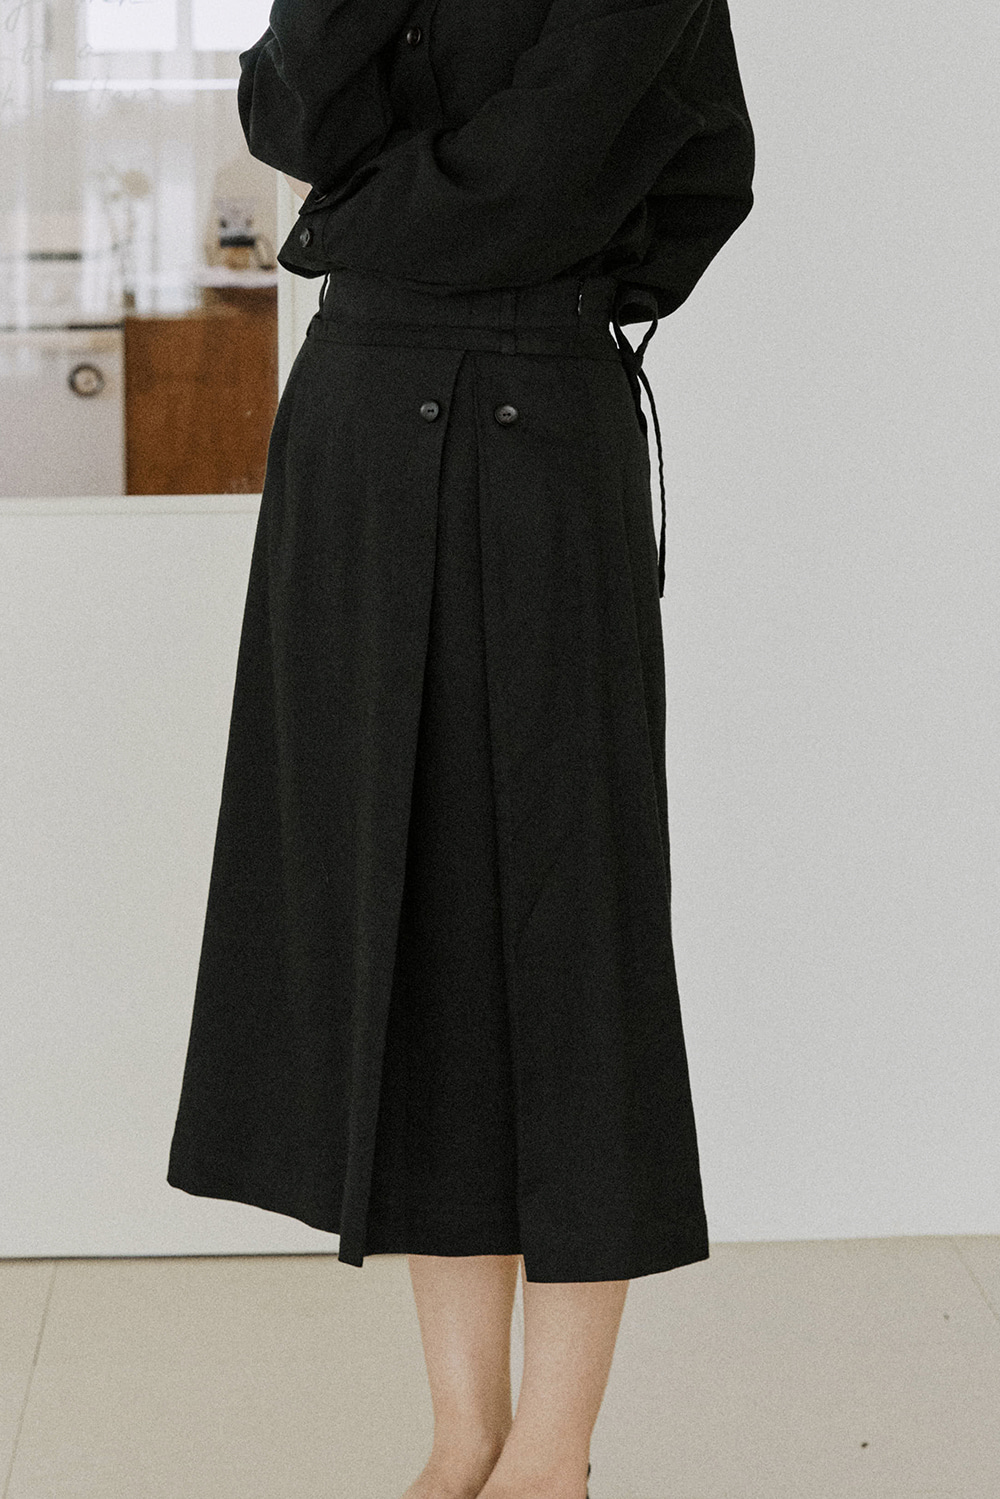 button skirt black [2color]